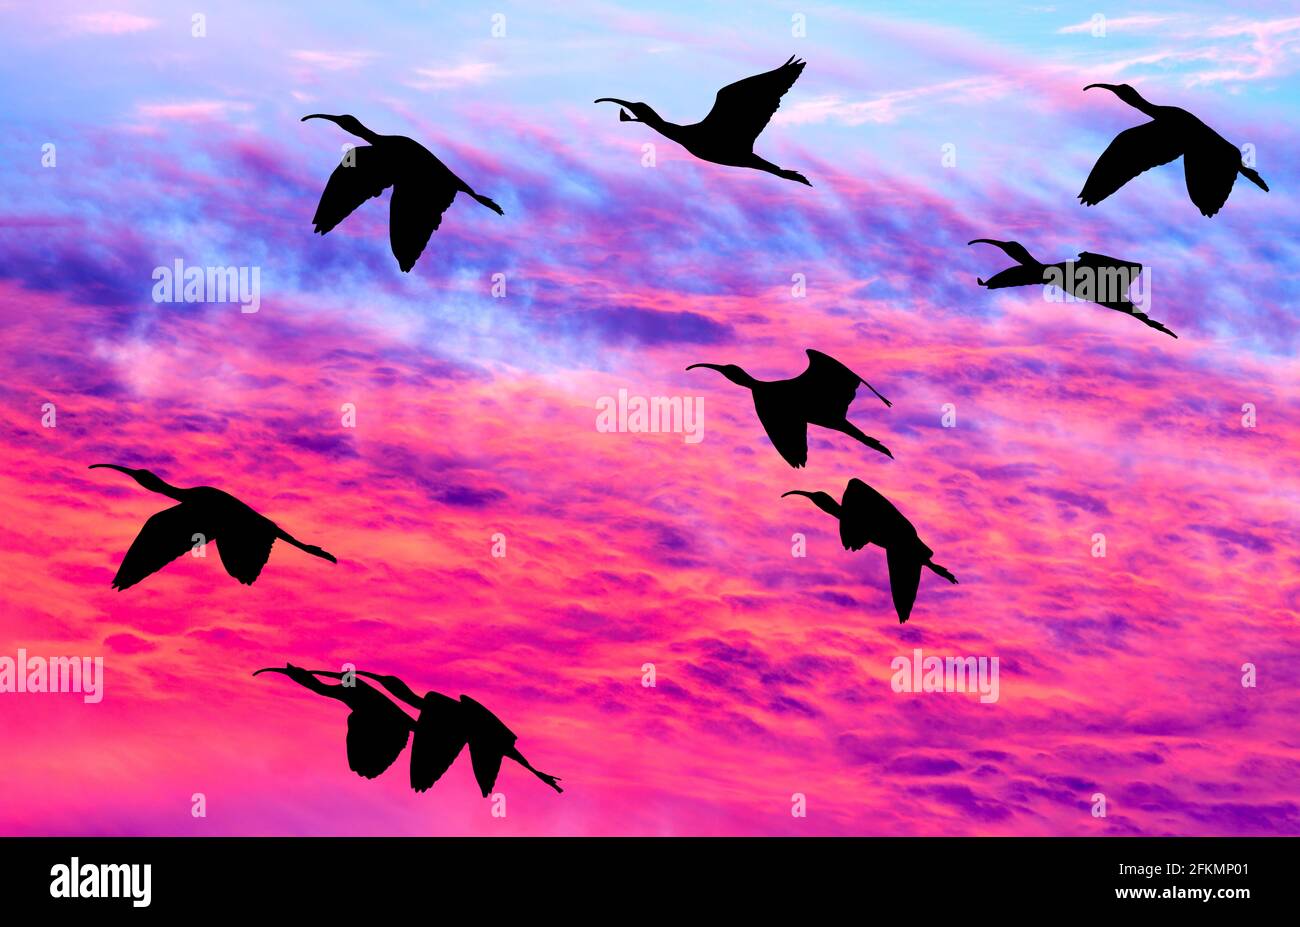 Une Flock of Birds volante avec des ailes étalées silhouetté Contre UN ciel de coucher de soleil coloré et vif Banque D'Images